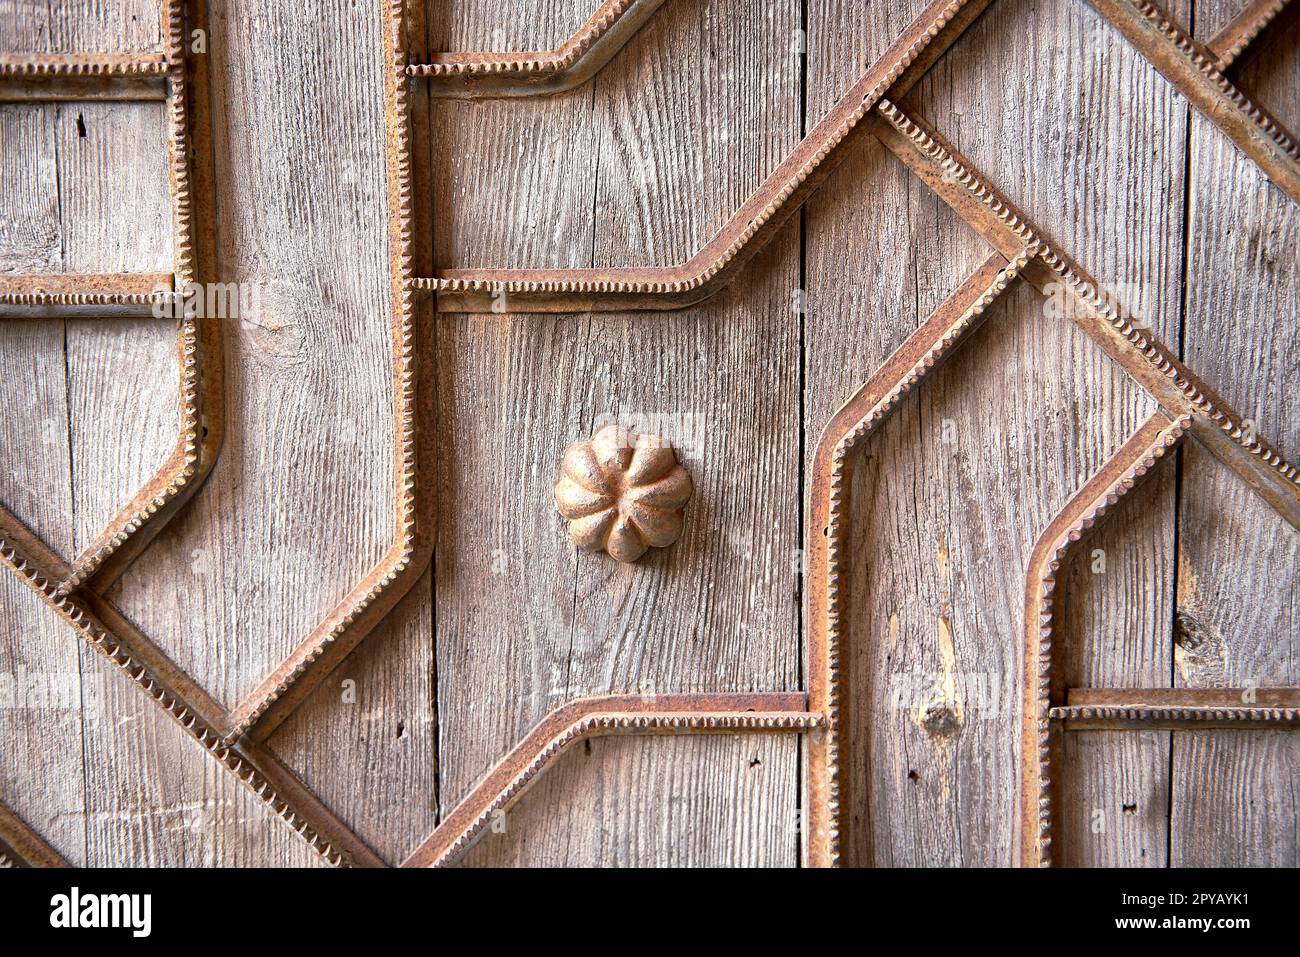 Detail of wooden door with metal ornaments Stock Photo